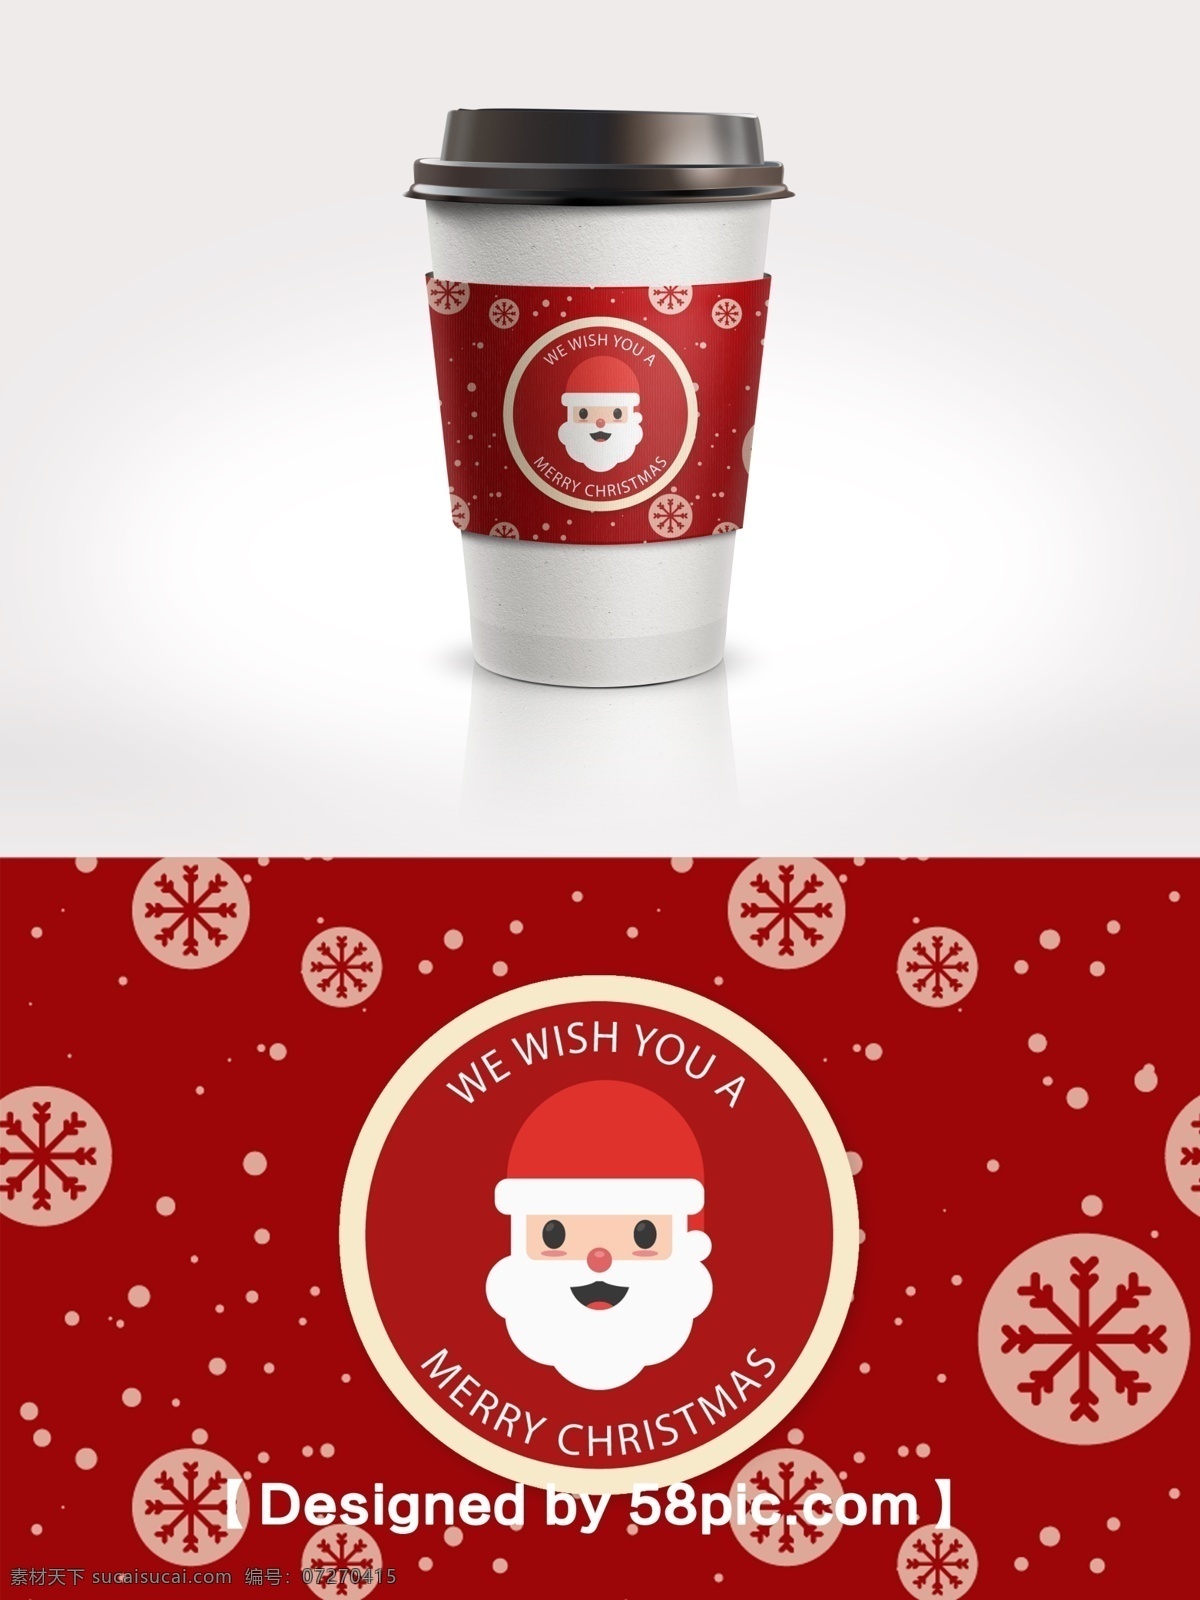 中国 红 简约 雪花 圣诞老人 咖啡杯 套 psd素材 广告设计模版 简约大气 节日包装设计 咖啡杯套设计 圣诞素材 中国红